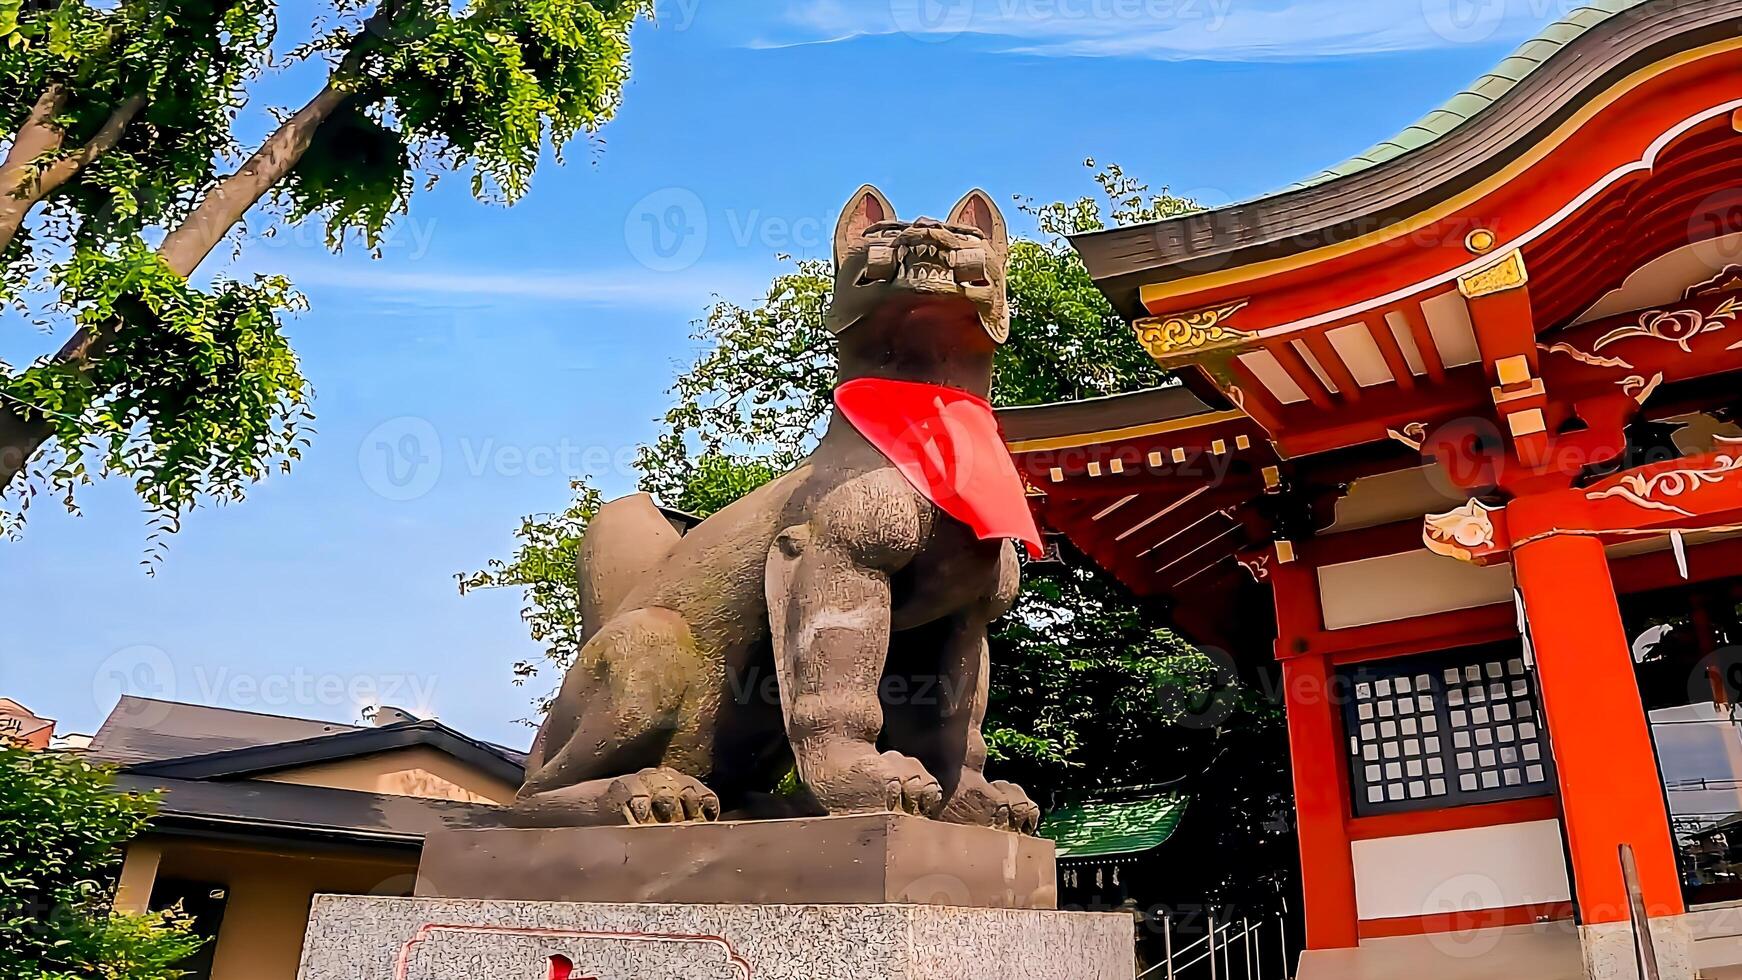 wakabayashi inari altaar vos vos en rood altaar gebouw.wakabayashi inari altaar is een altaar in stelagaya afdeling, Tokio. sinds het ontvangen een bijdrage van altaar gebied in 1769, het is verondersteld foto